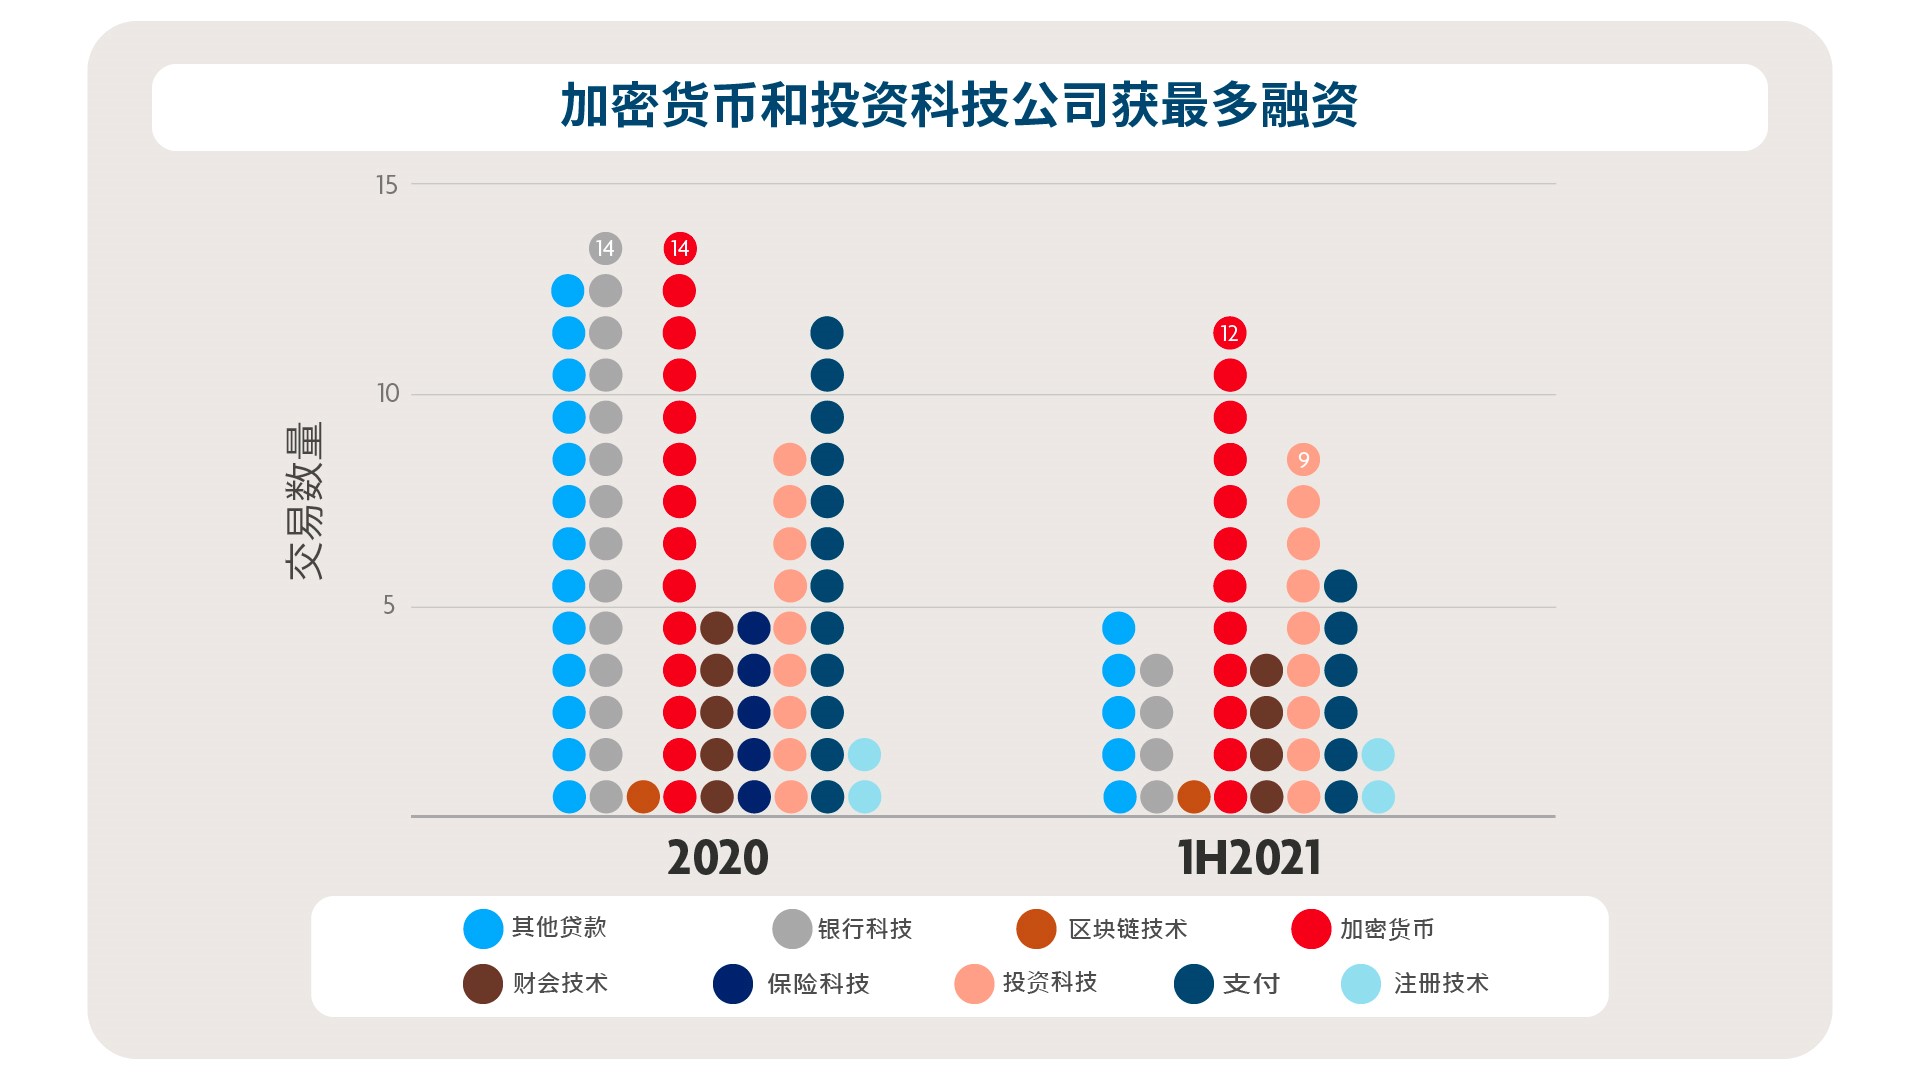 2021 年上半年新加坡按类别划分的融资交易数量